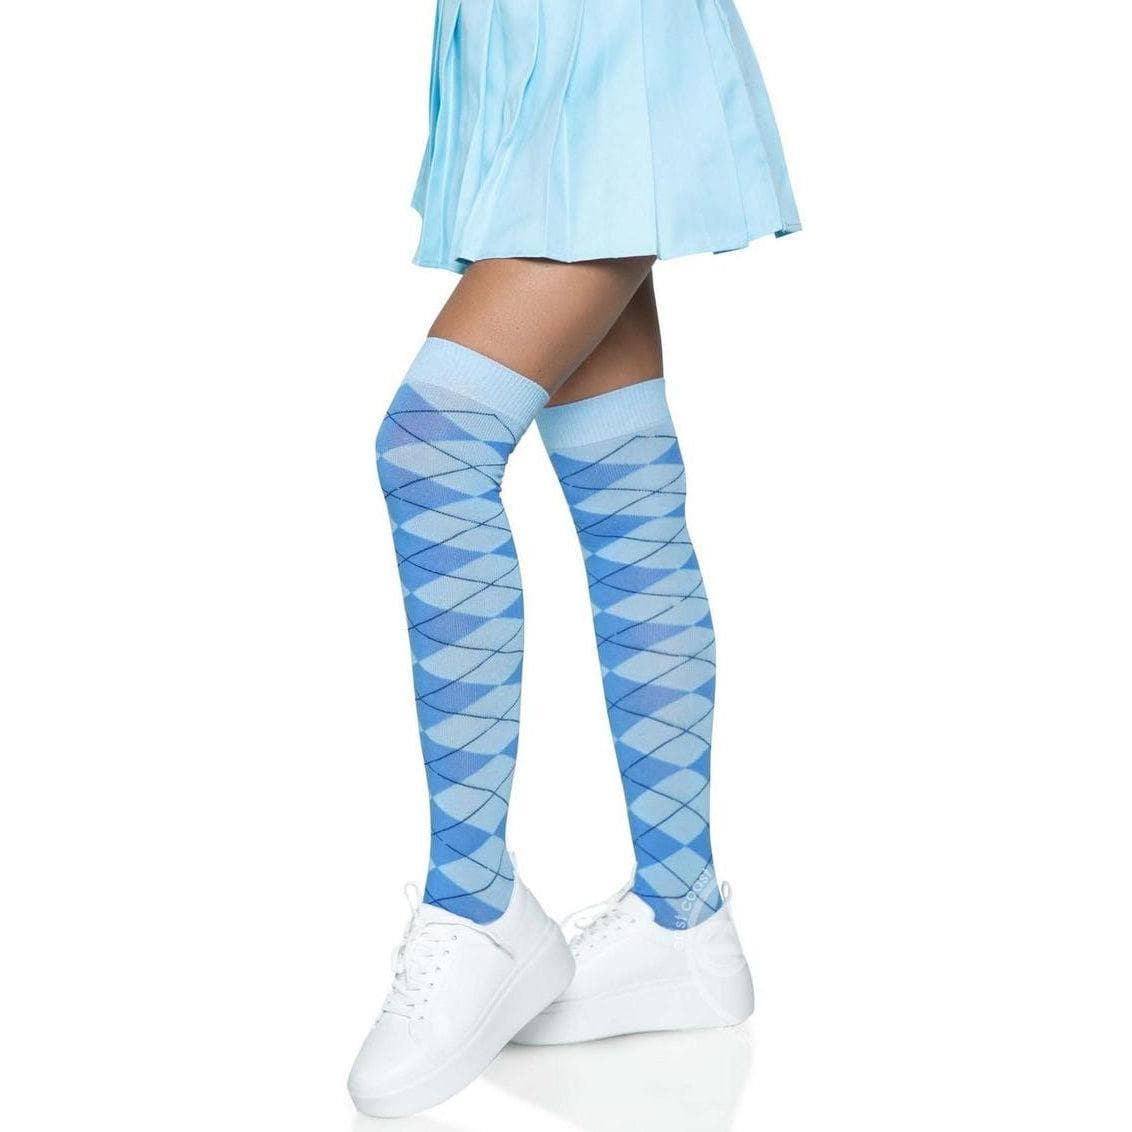 Leg Avenue Argyle Knit Over The Knee Socks Blue - Romantic Blessings